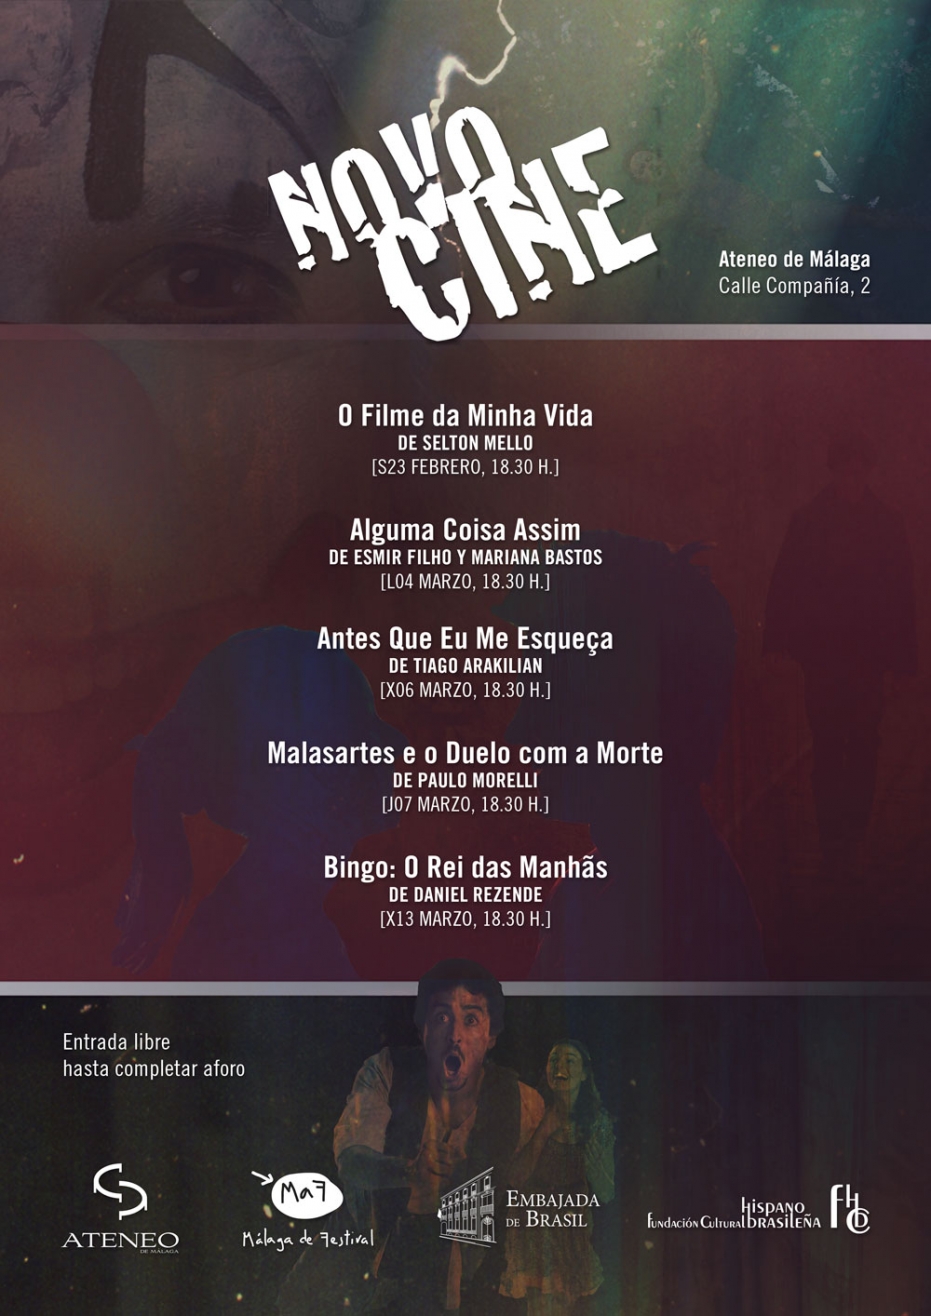 II Ciclo de Cine Novocine: proyección de Malasartes e o Duelo com a Morte, de Paulo Morelli. En colaboración con la Embajada de Brasil y la Fundación Cultural Hispano Brasileña